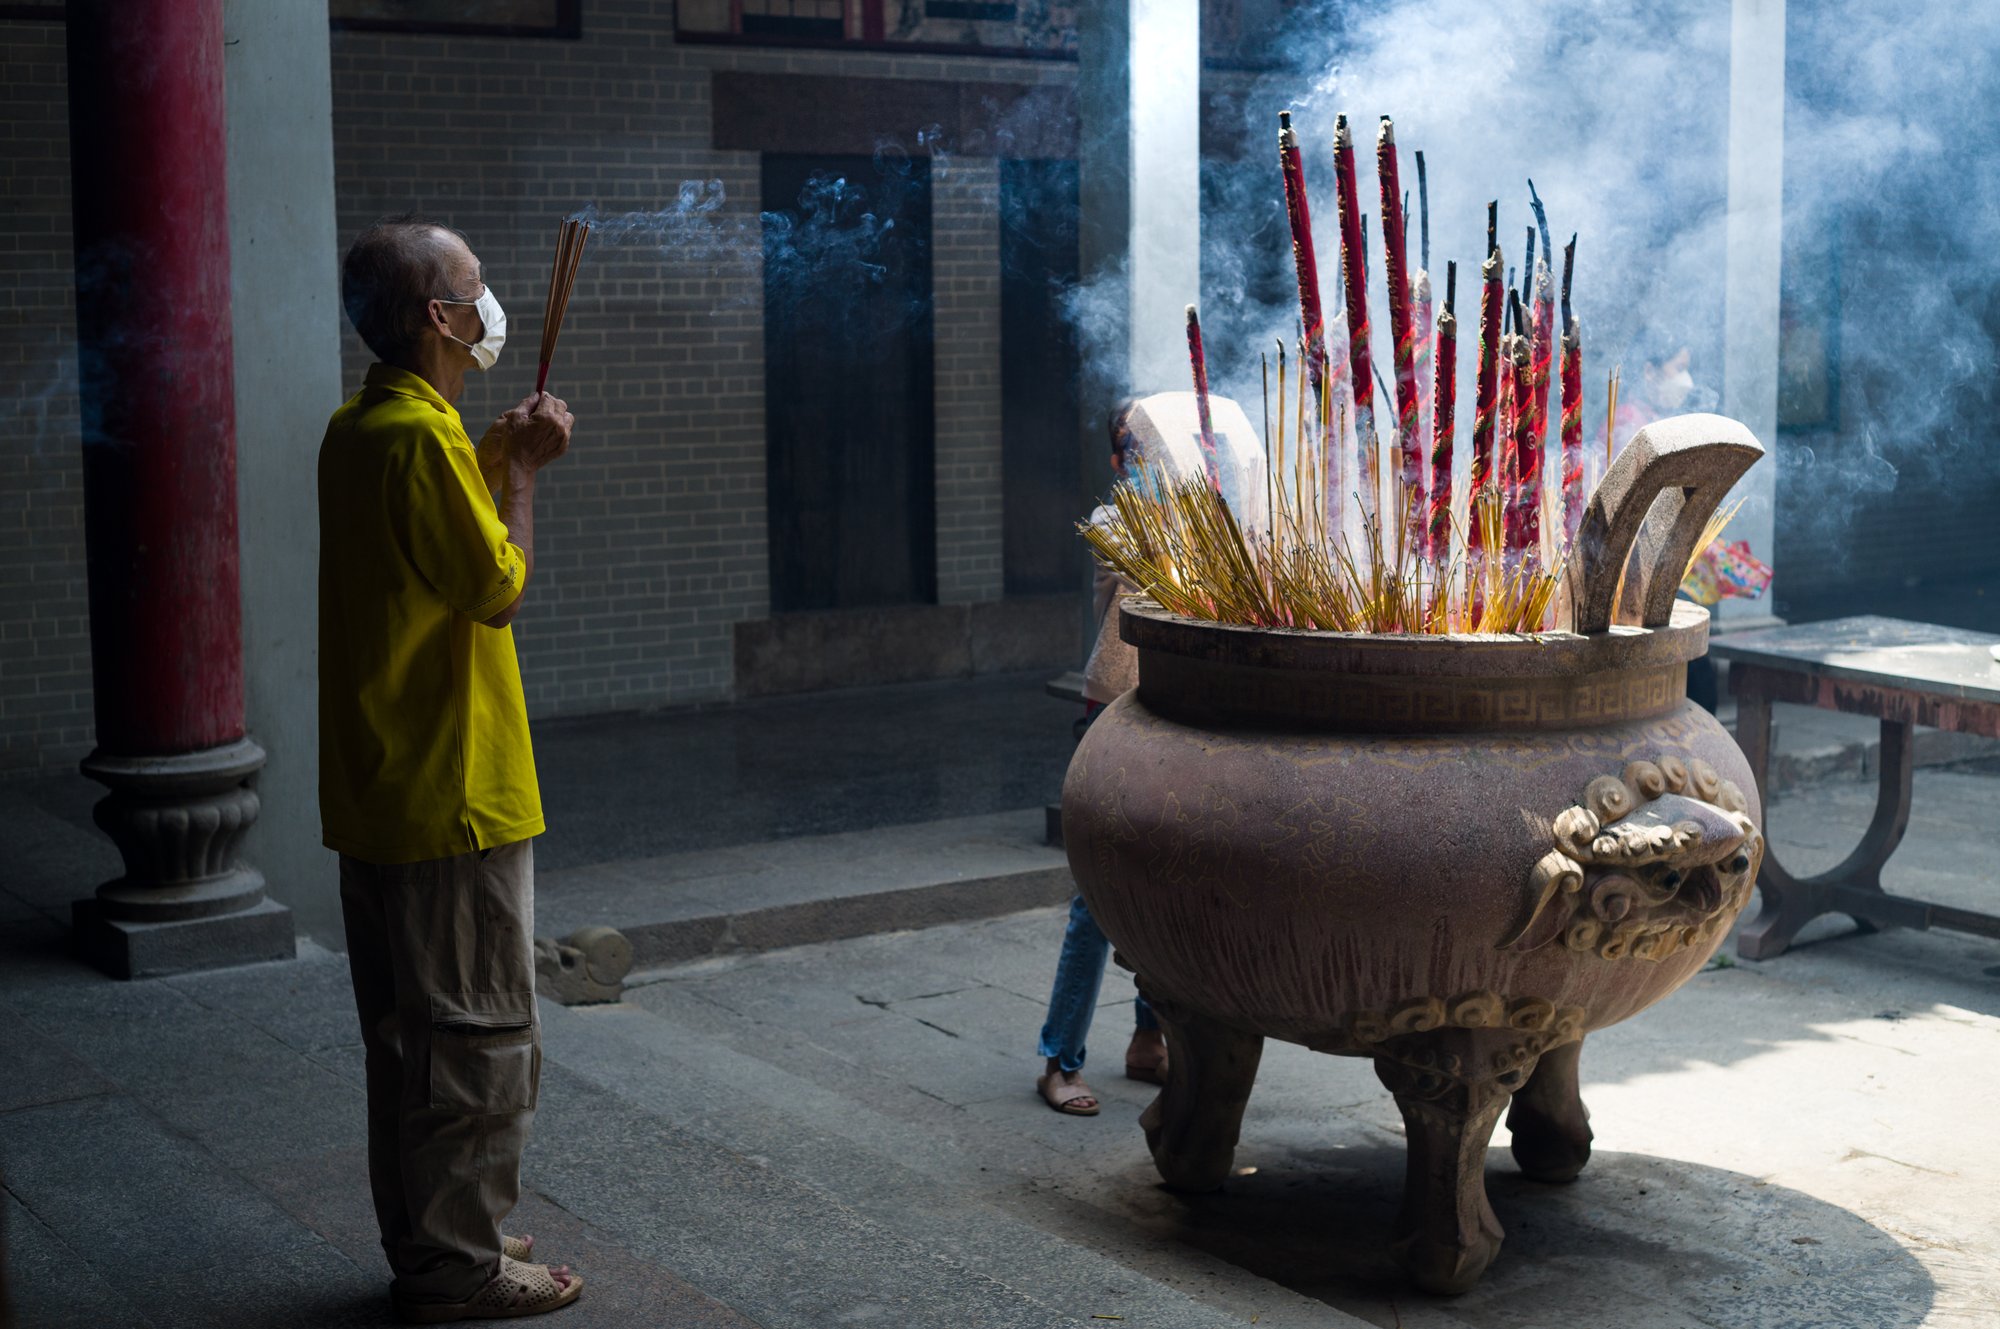 Elder man praying with incenses